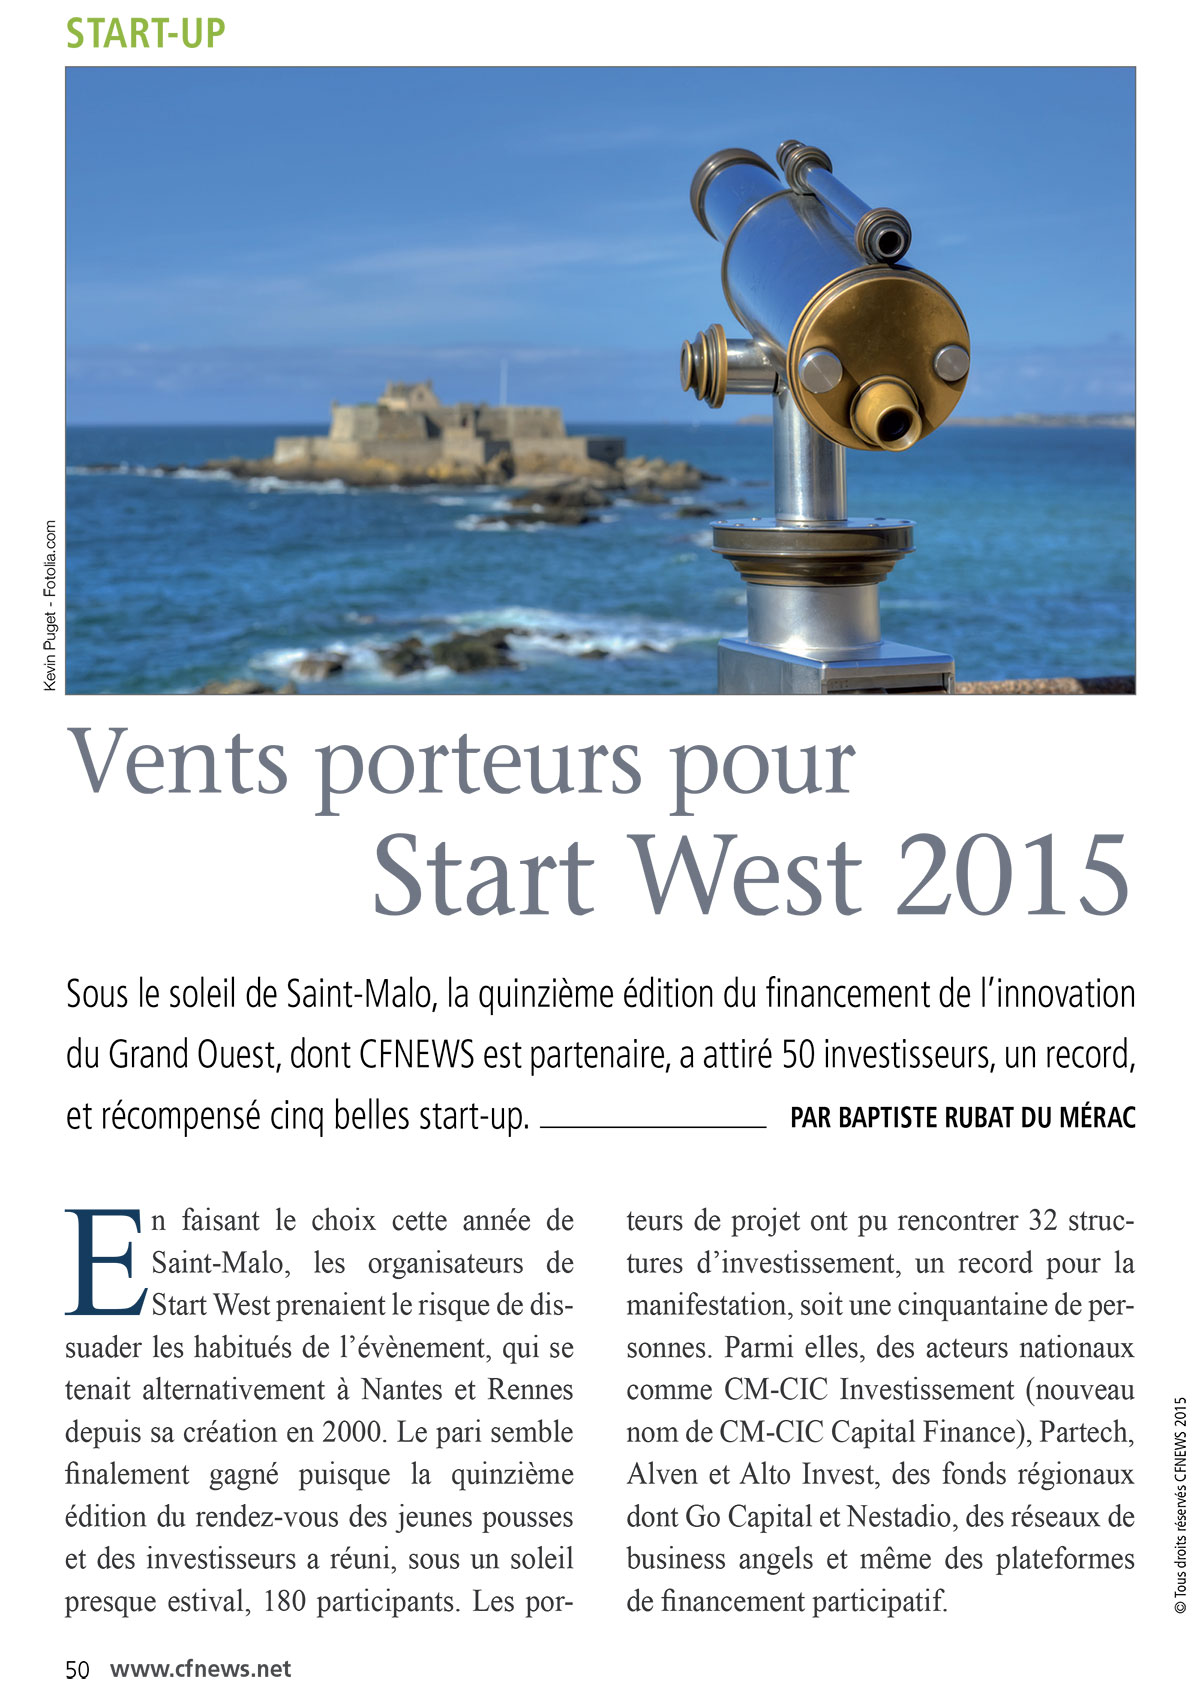 avril2015-vents_porteurs_pour_start_west_2015